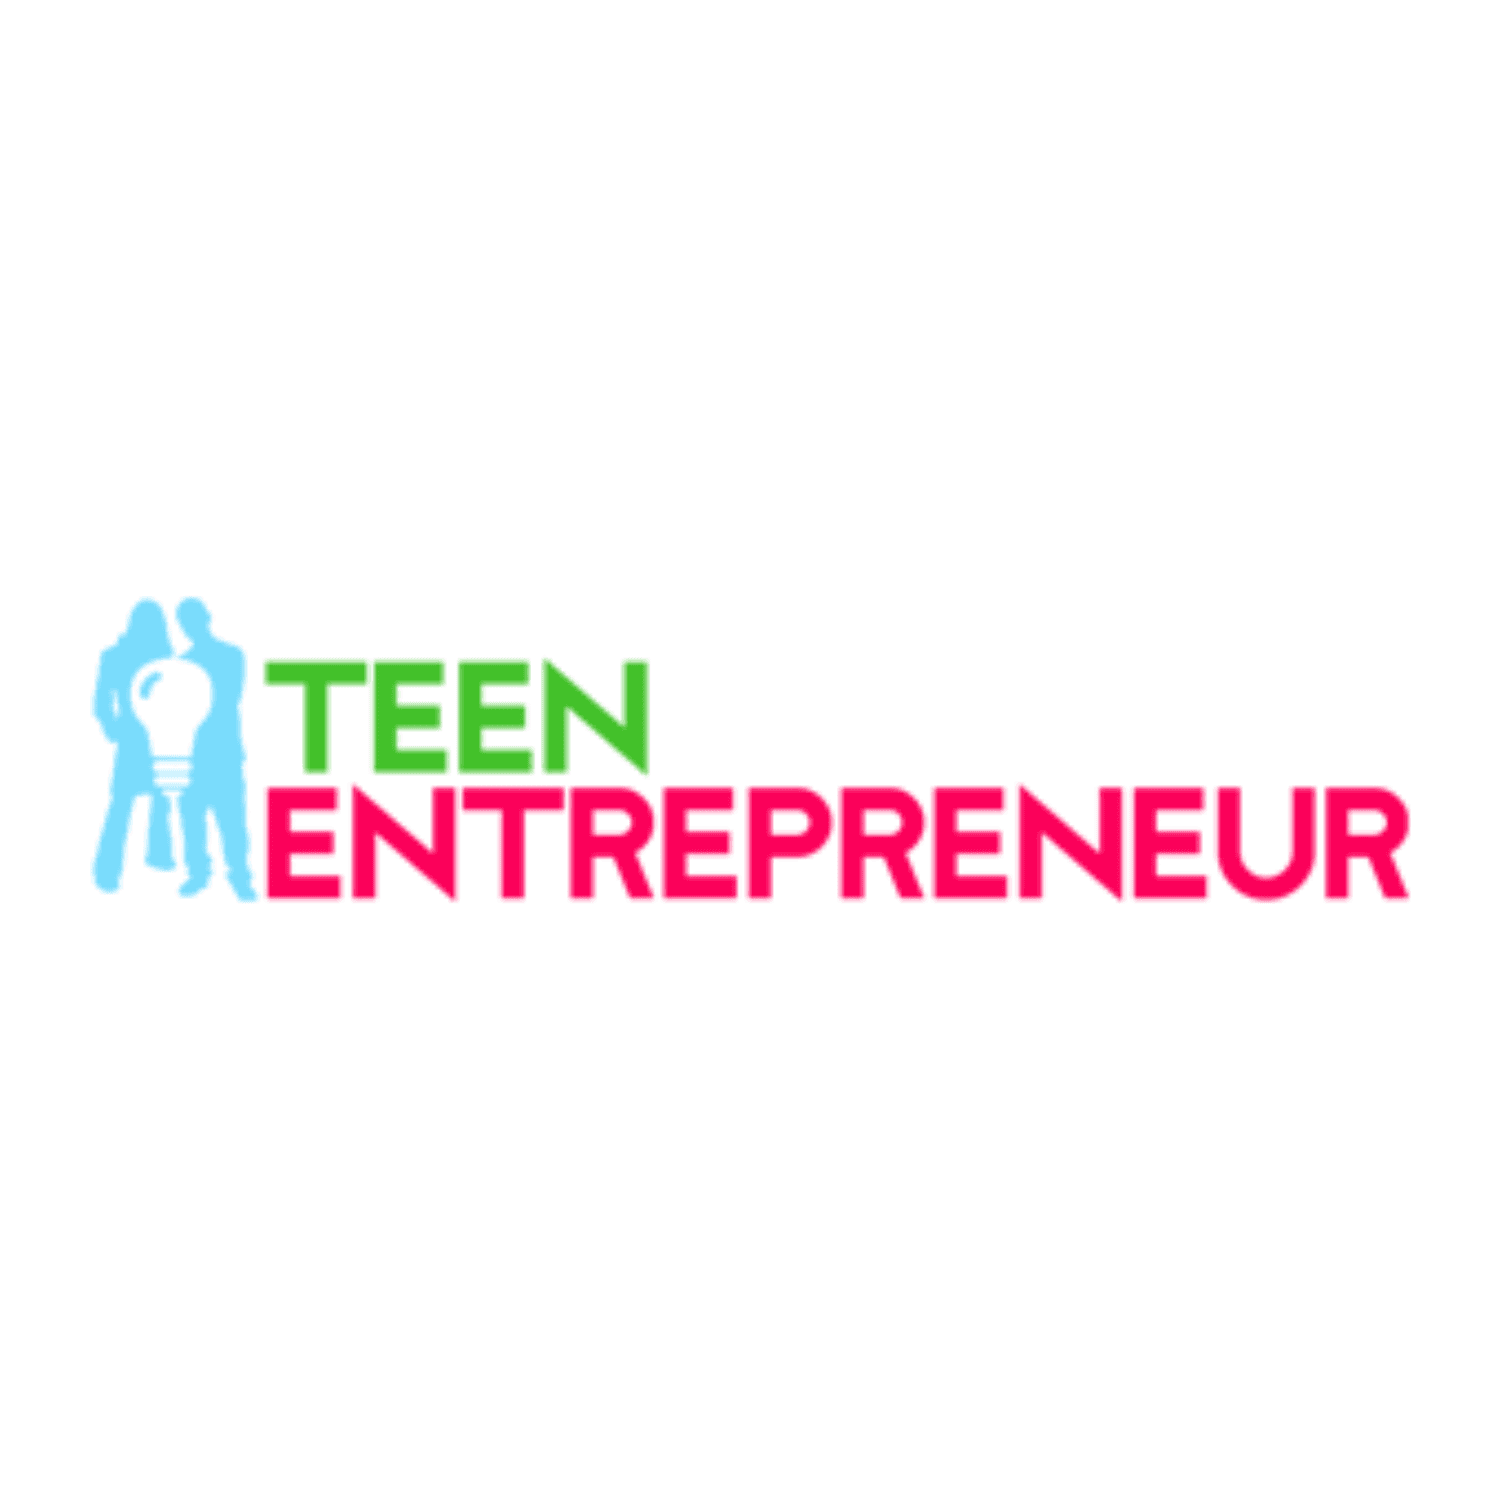 Teen Entrepreneur